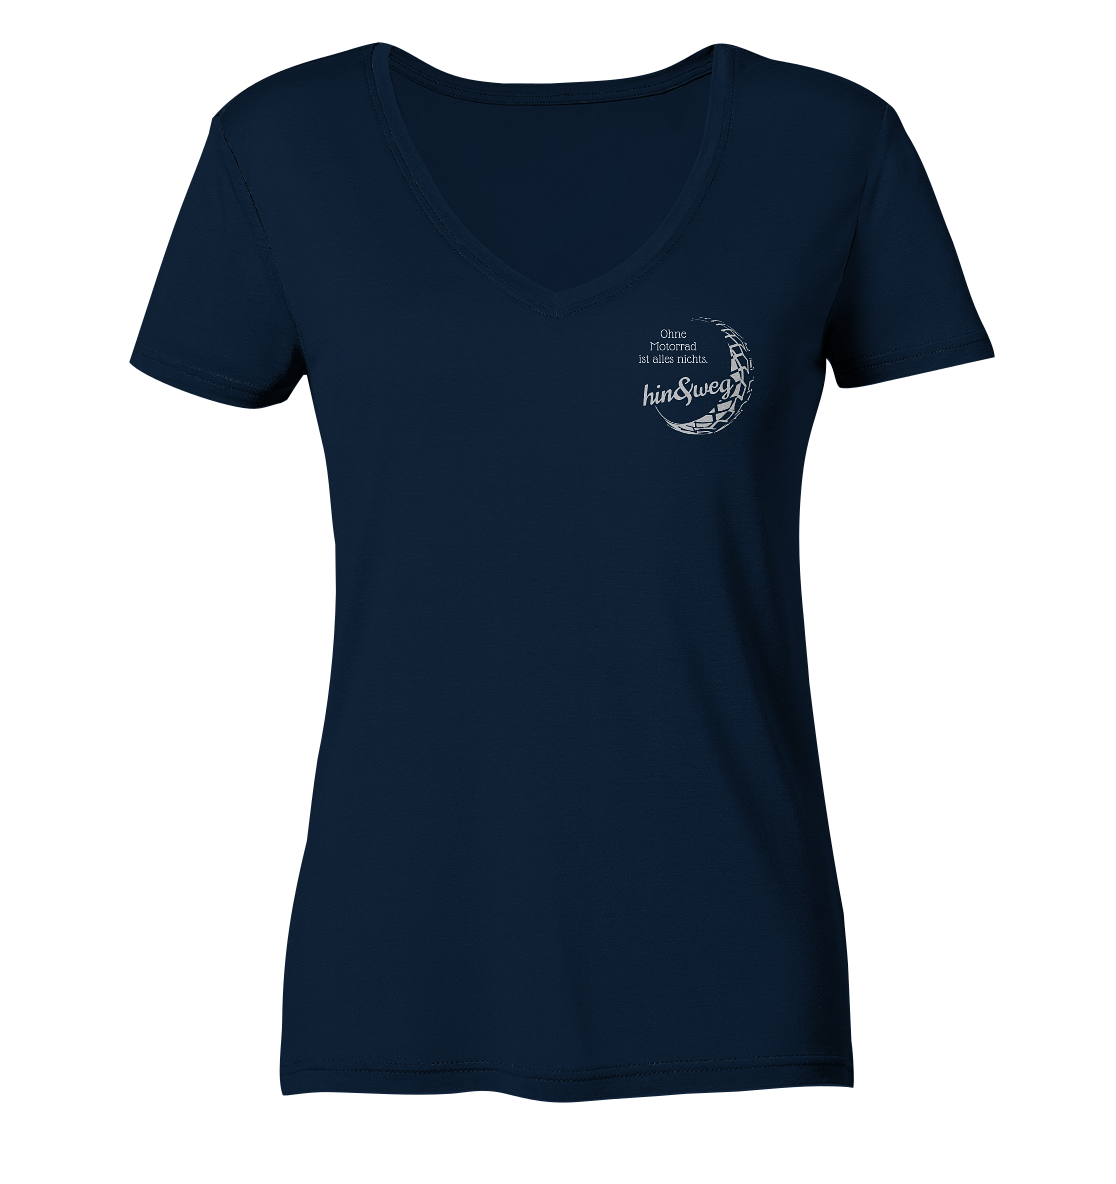 Damen-T-Shirt, V-Ausschnitt, mit kleinem Logo "Eva hin und weg" und Spruch "Ohne Motorrad ist alles nichts.", dunkel blau